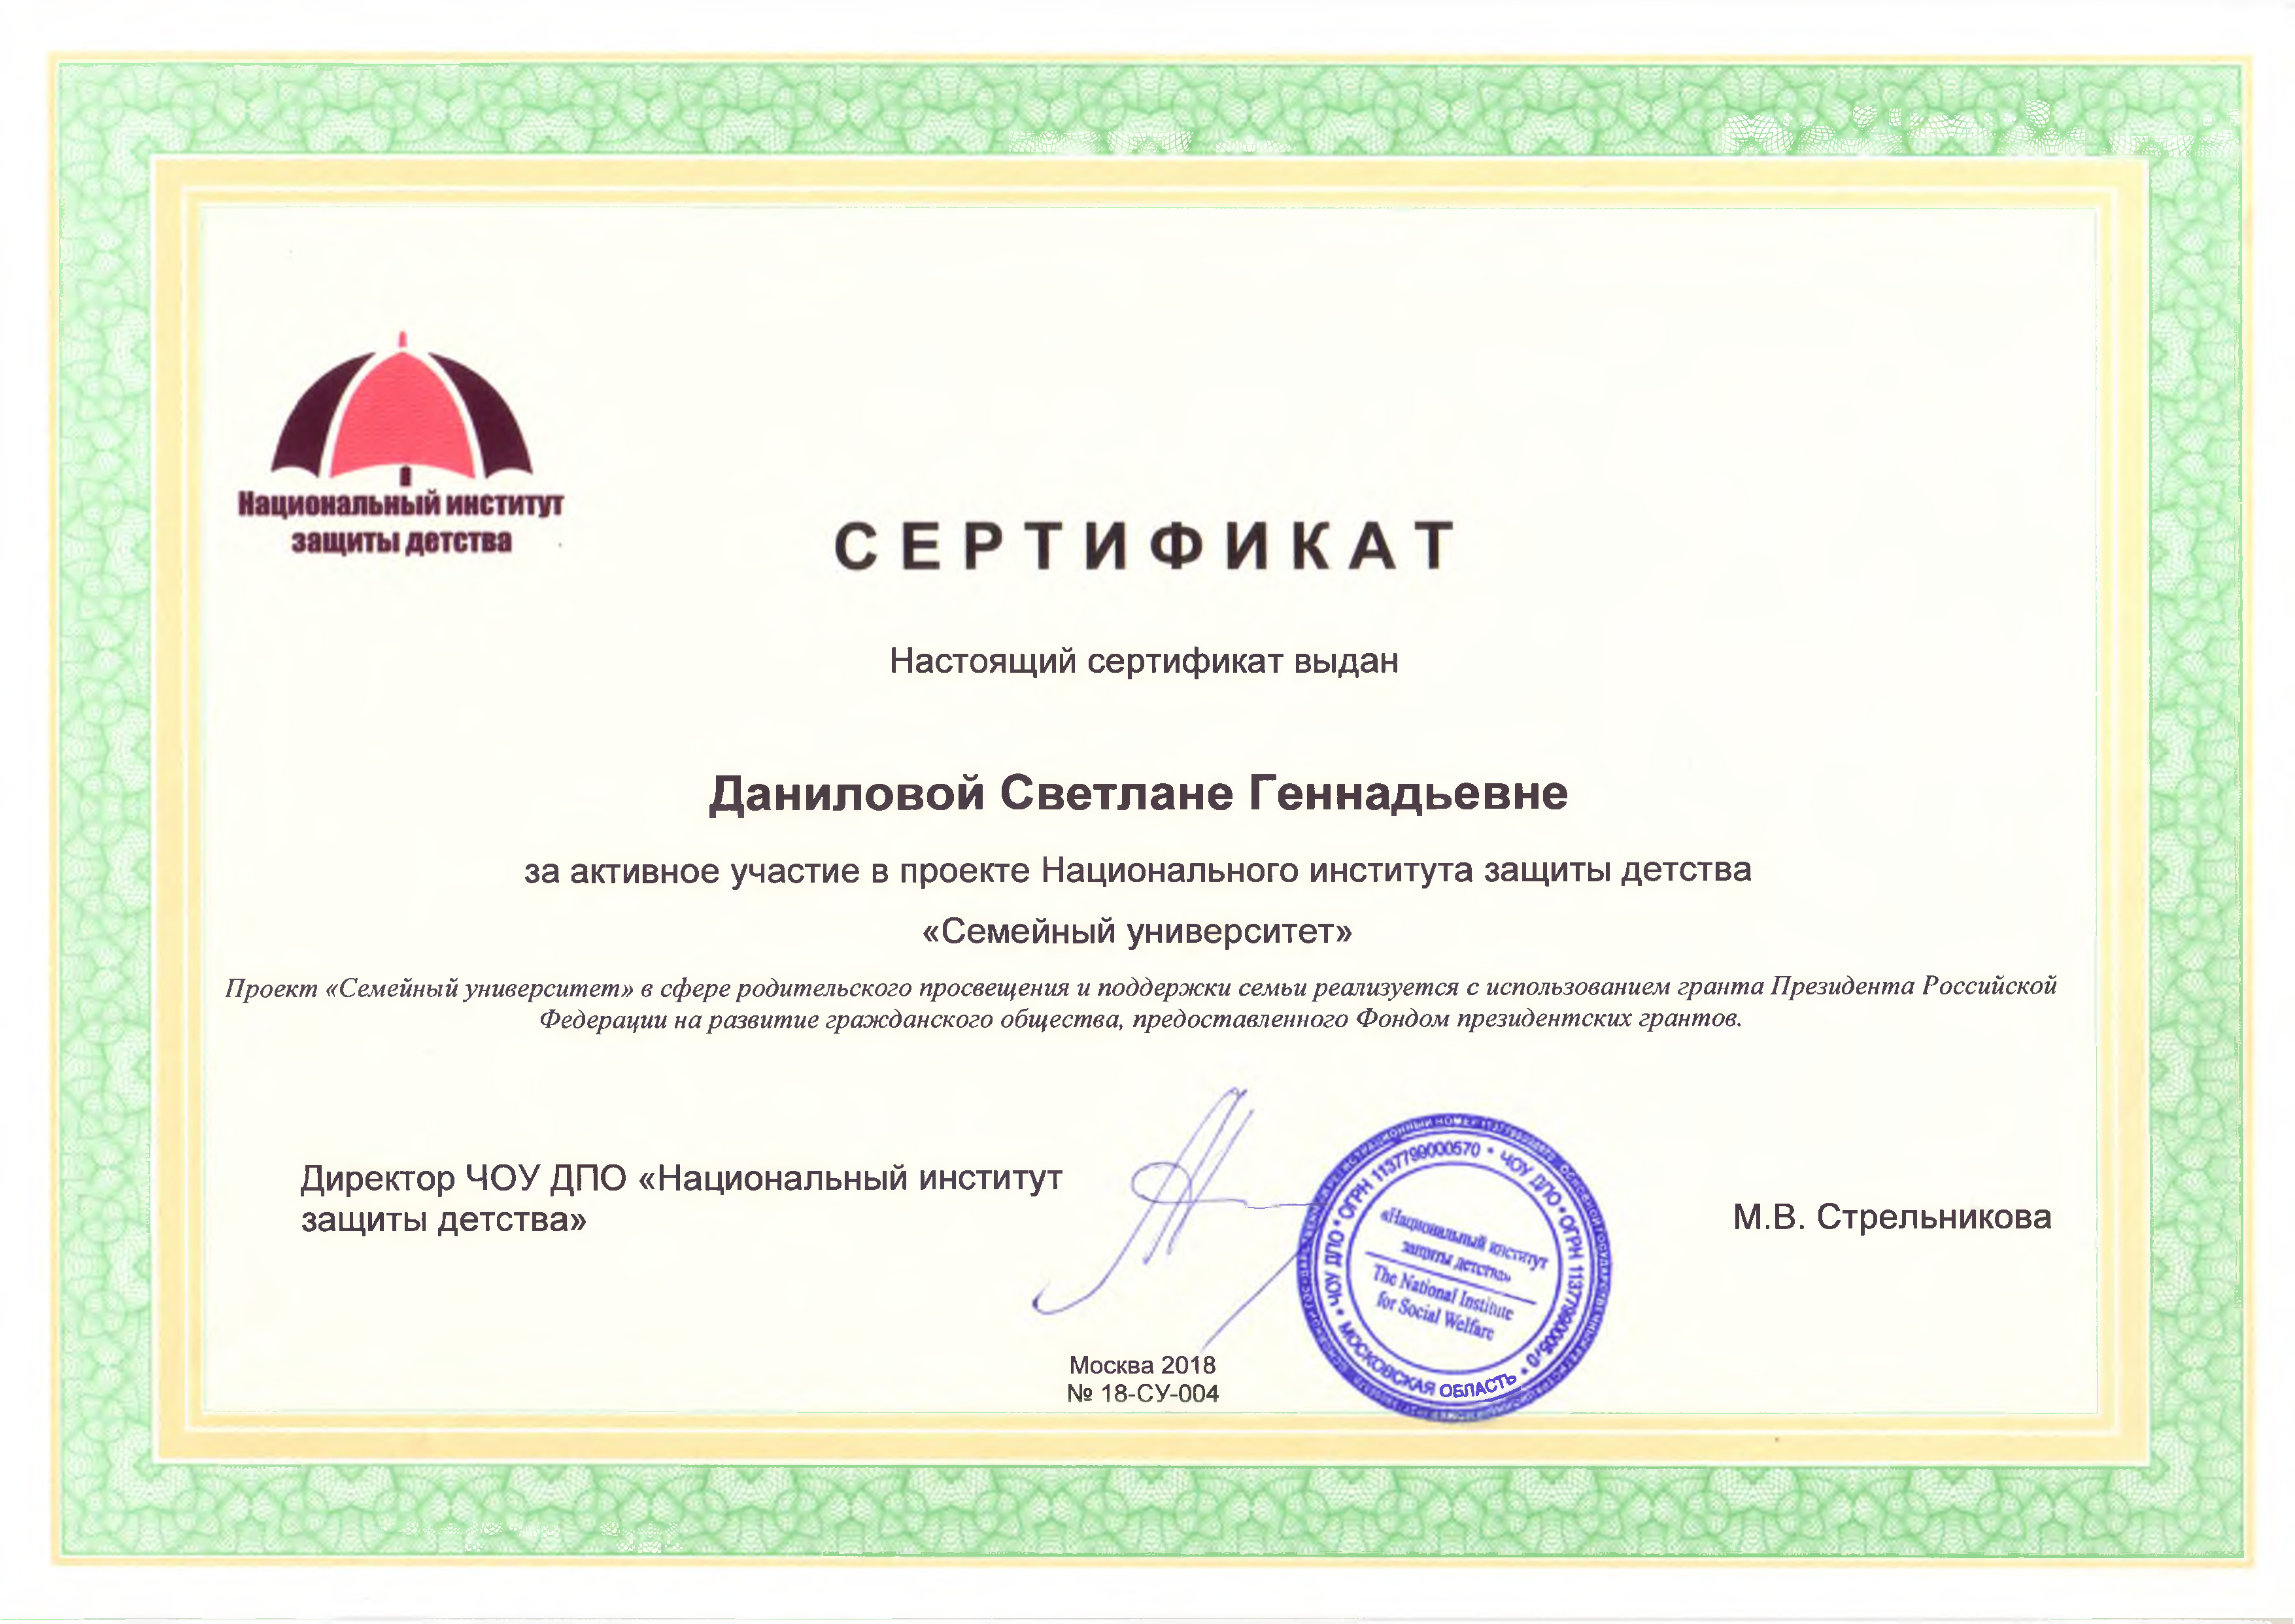 Сертификат за активное участие в проекте Национального института защиты детства